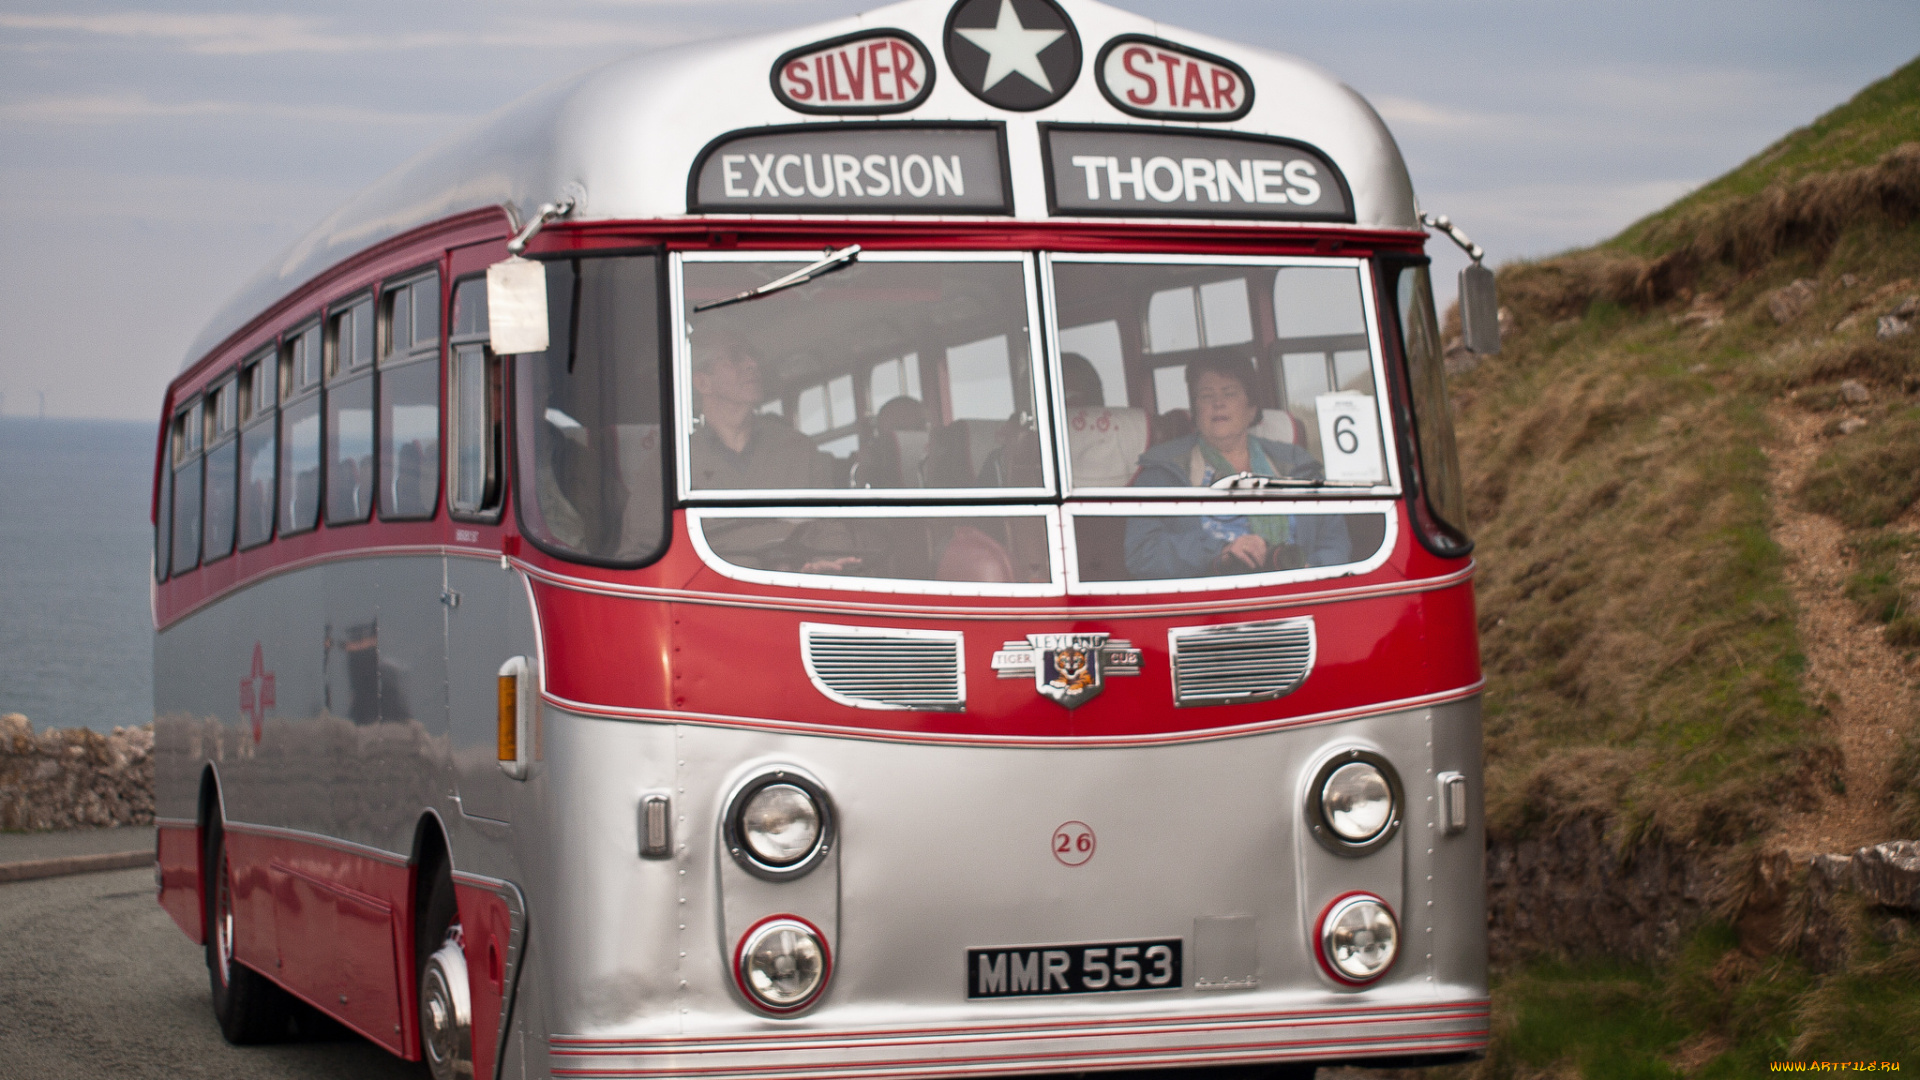 1955, leyland, tiger, cubharrington, silver, star, 26, автомобили, автобусы, общественный, транспорт, автобус